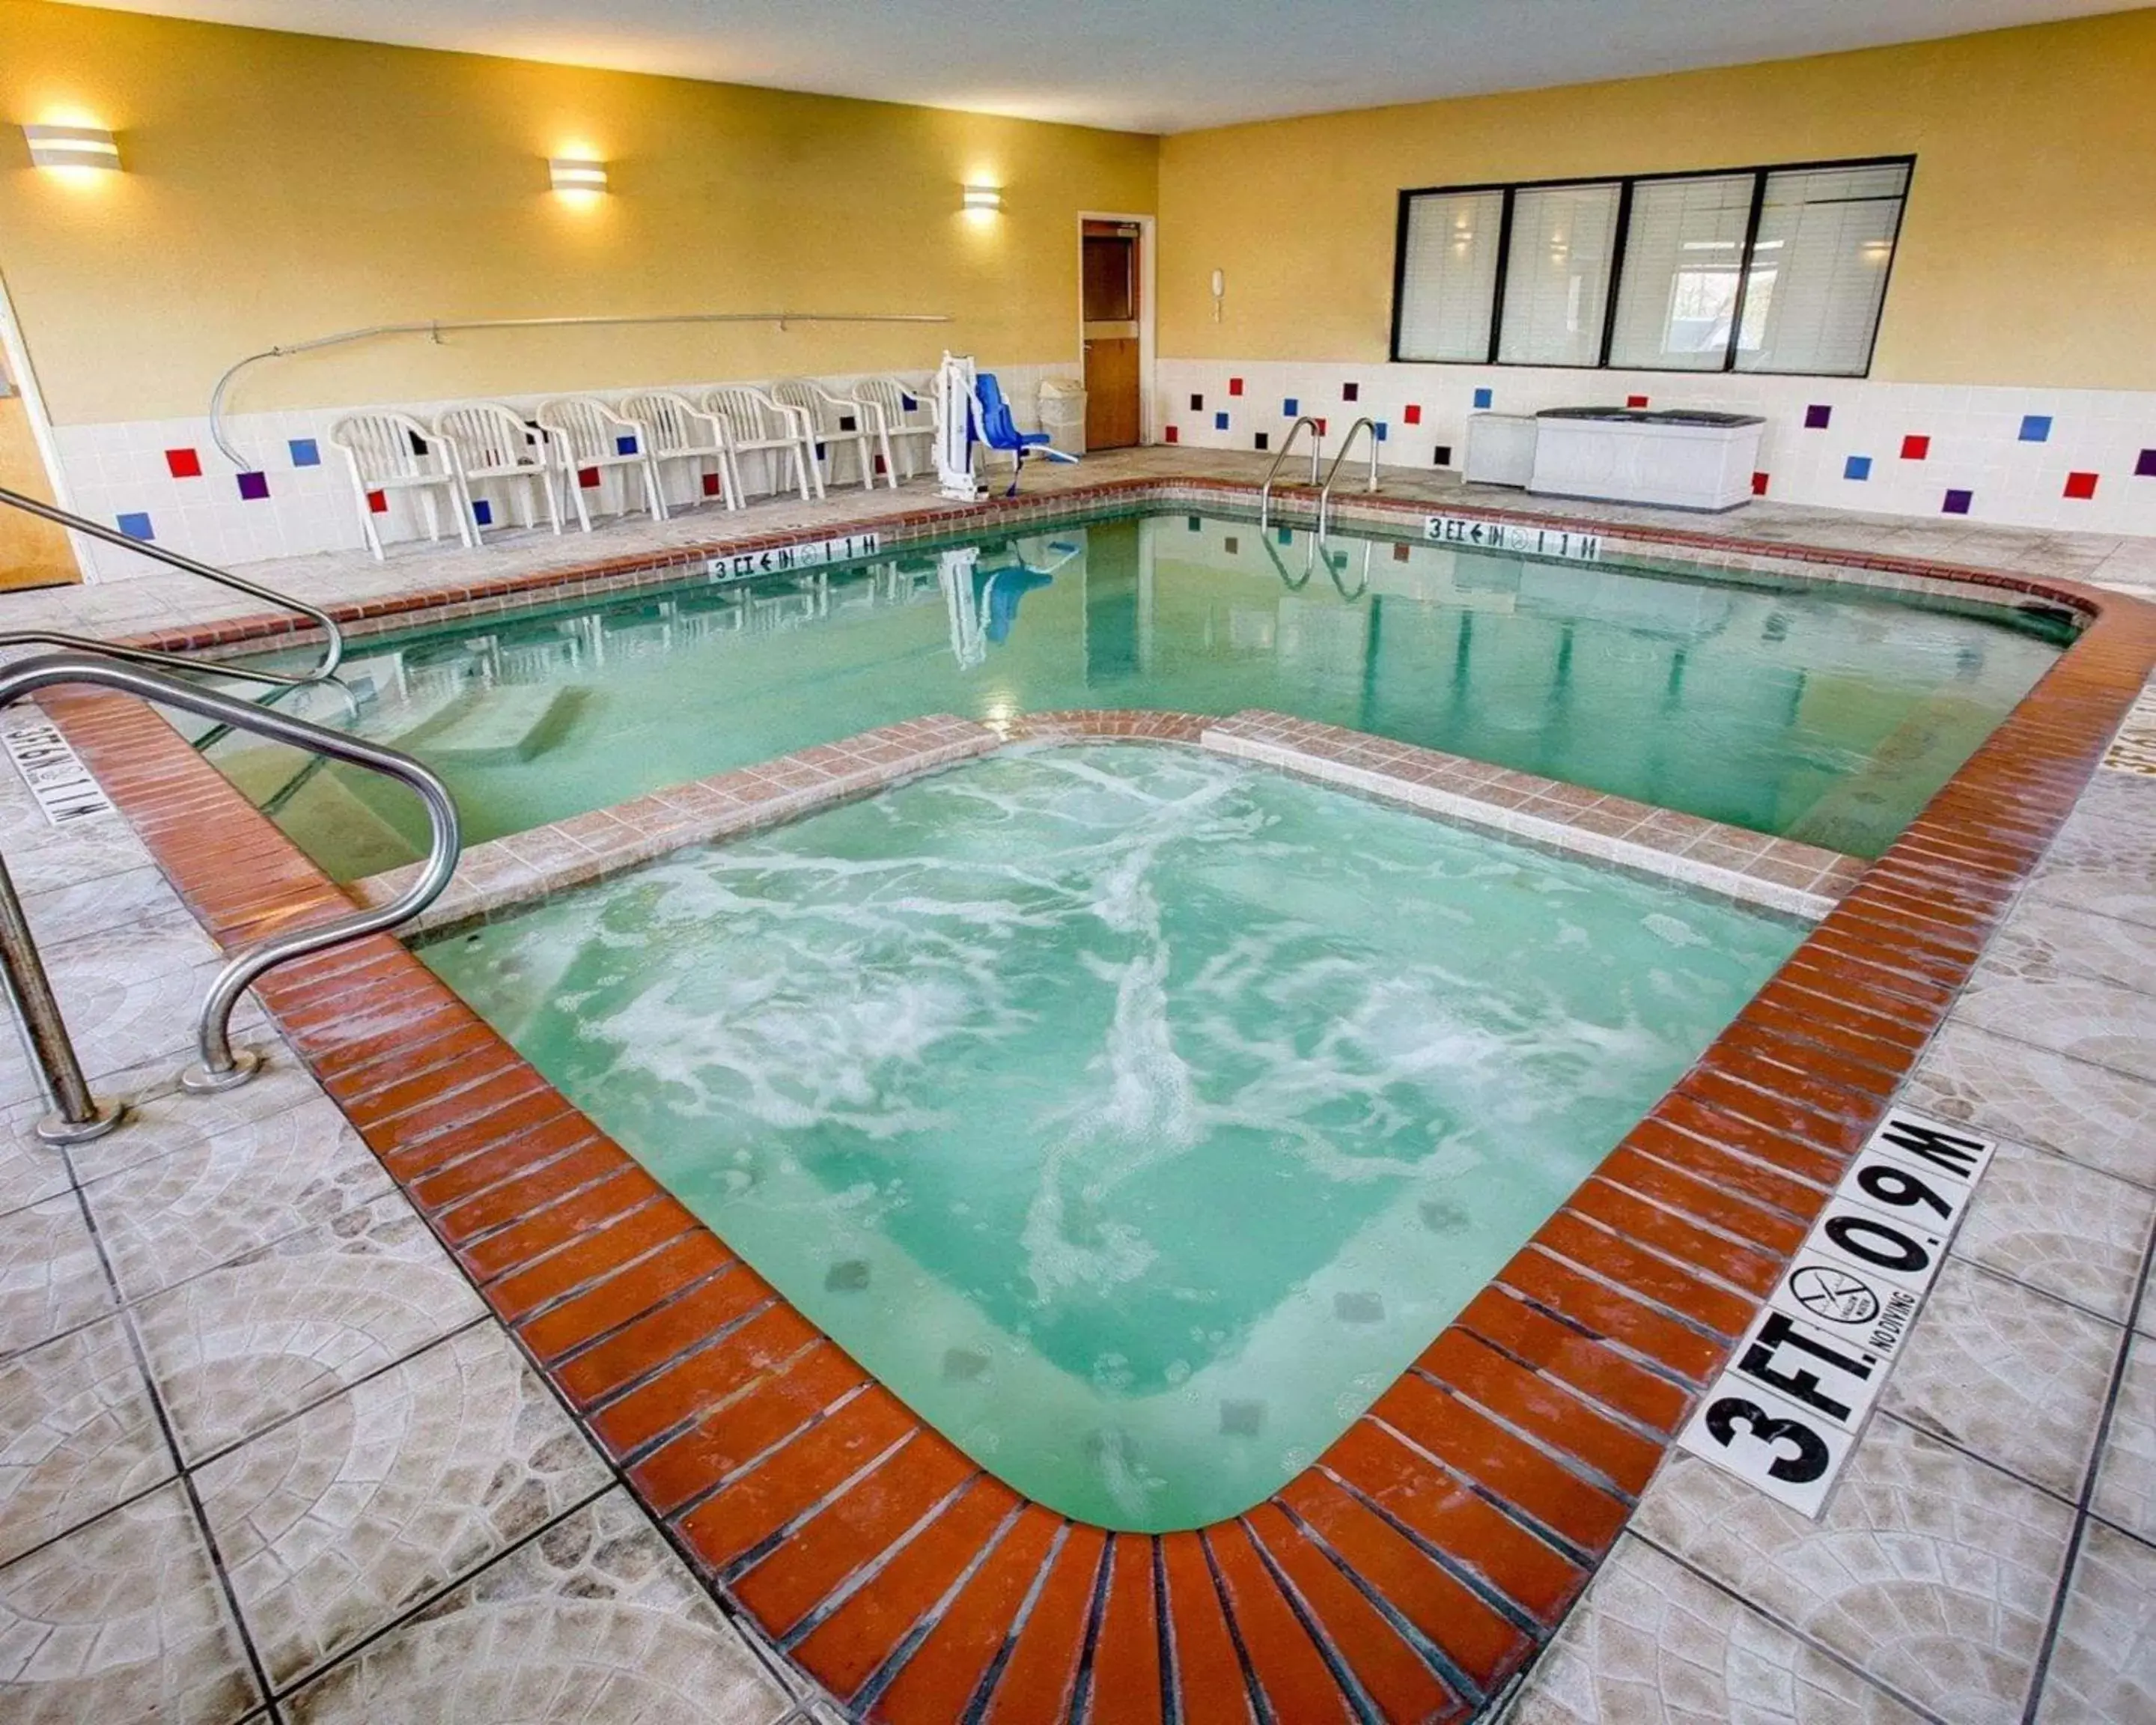 On site, Swimming Pool in Comfort Suites Brenham